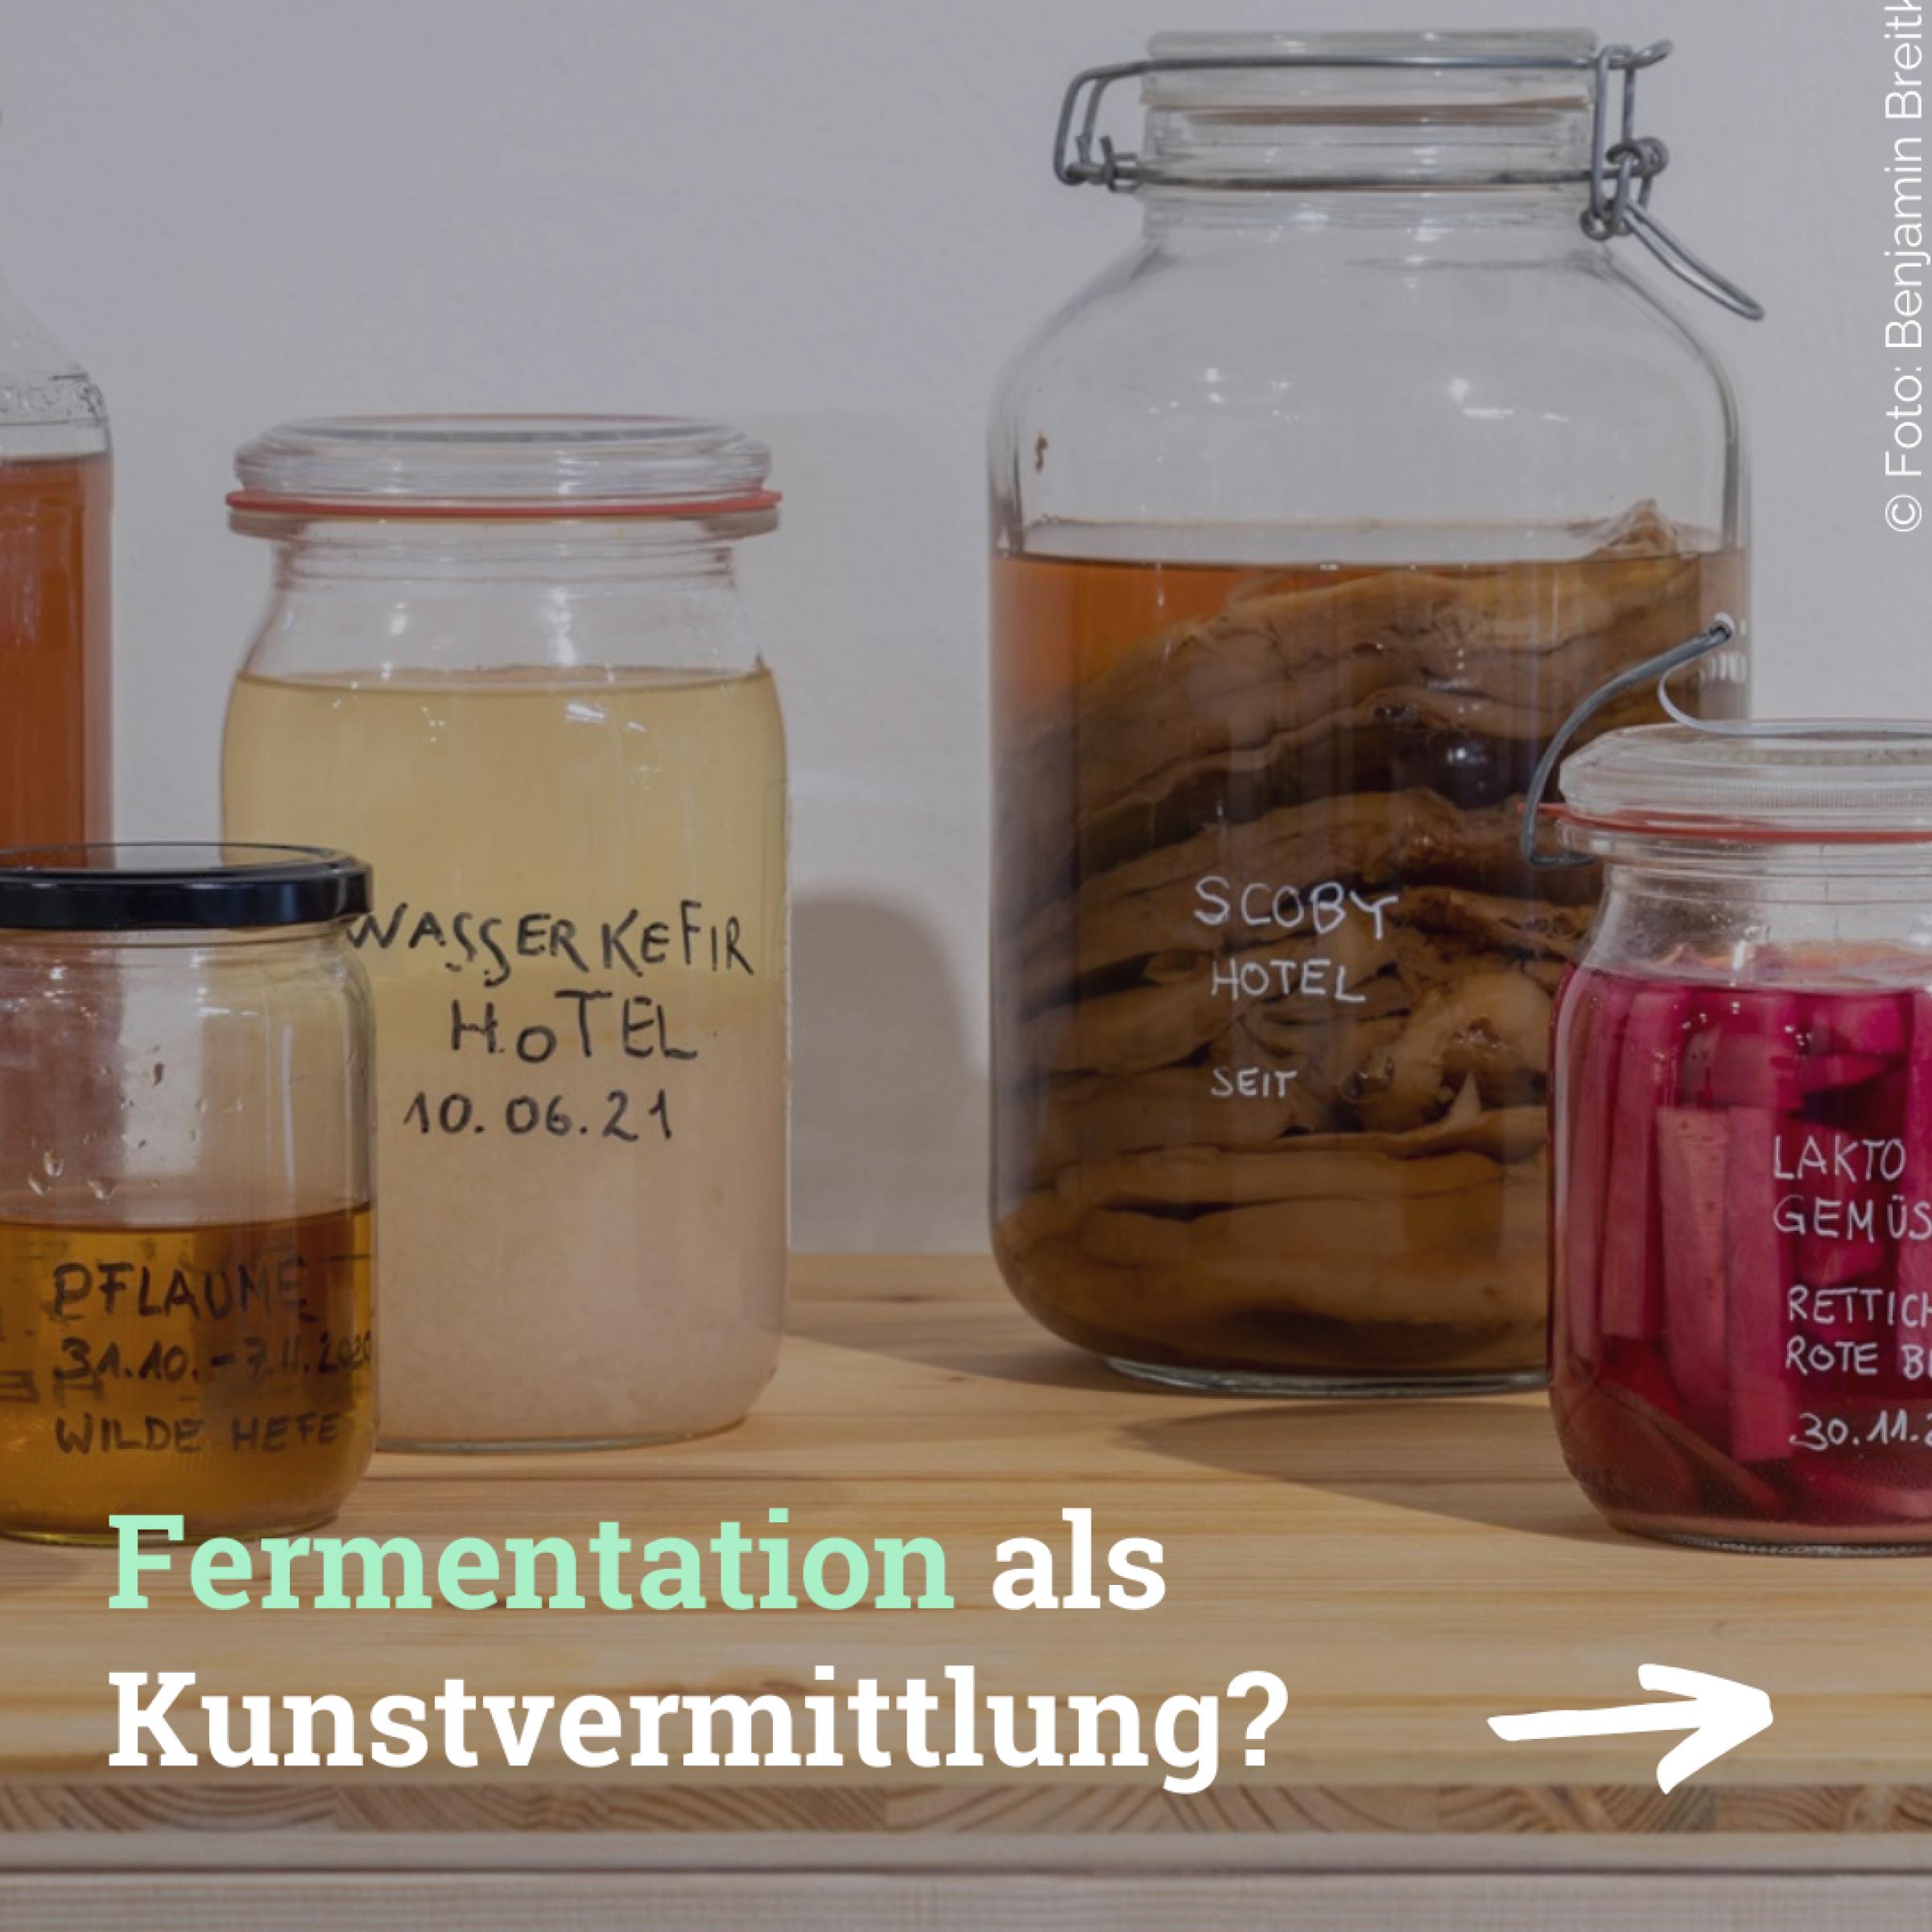 Auf dem Bild sind Einmachgläser zu sehen, in denen verschiedene, bunte Lebensmittel fermentiert sind. Darauf der Text: Fermentation als Kunstvermittlung?